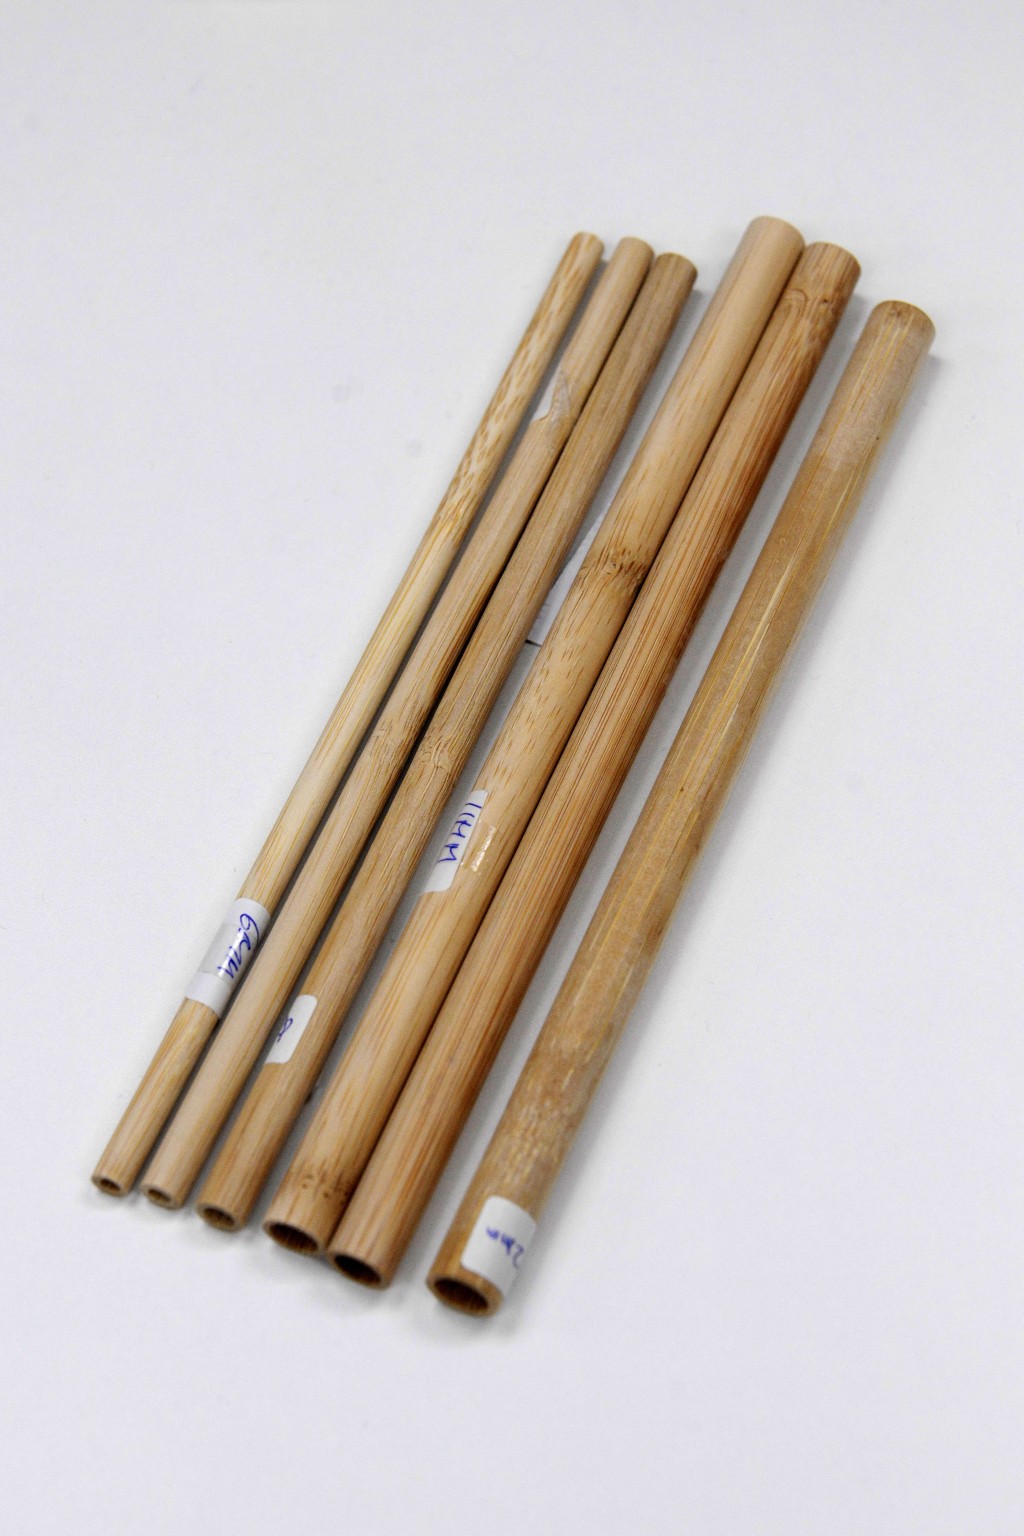 木筷子亦属环保餐具的一种。